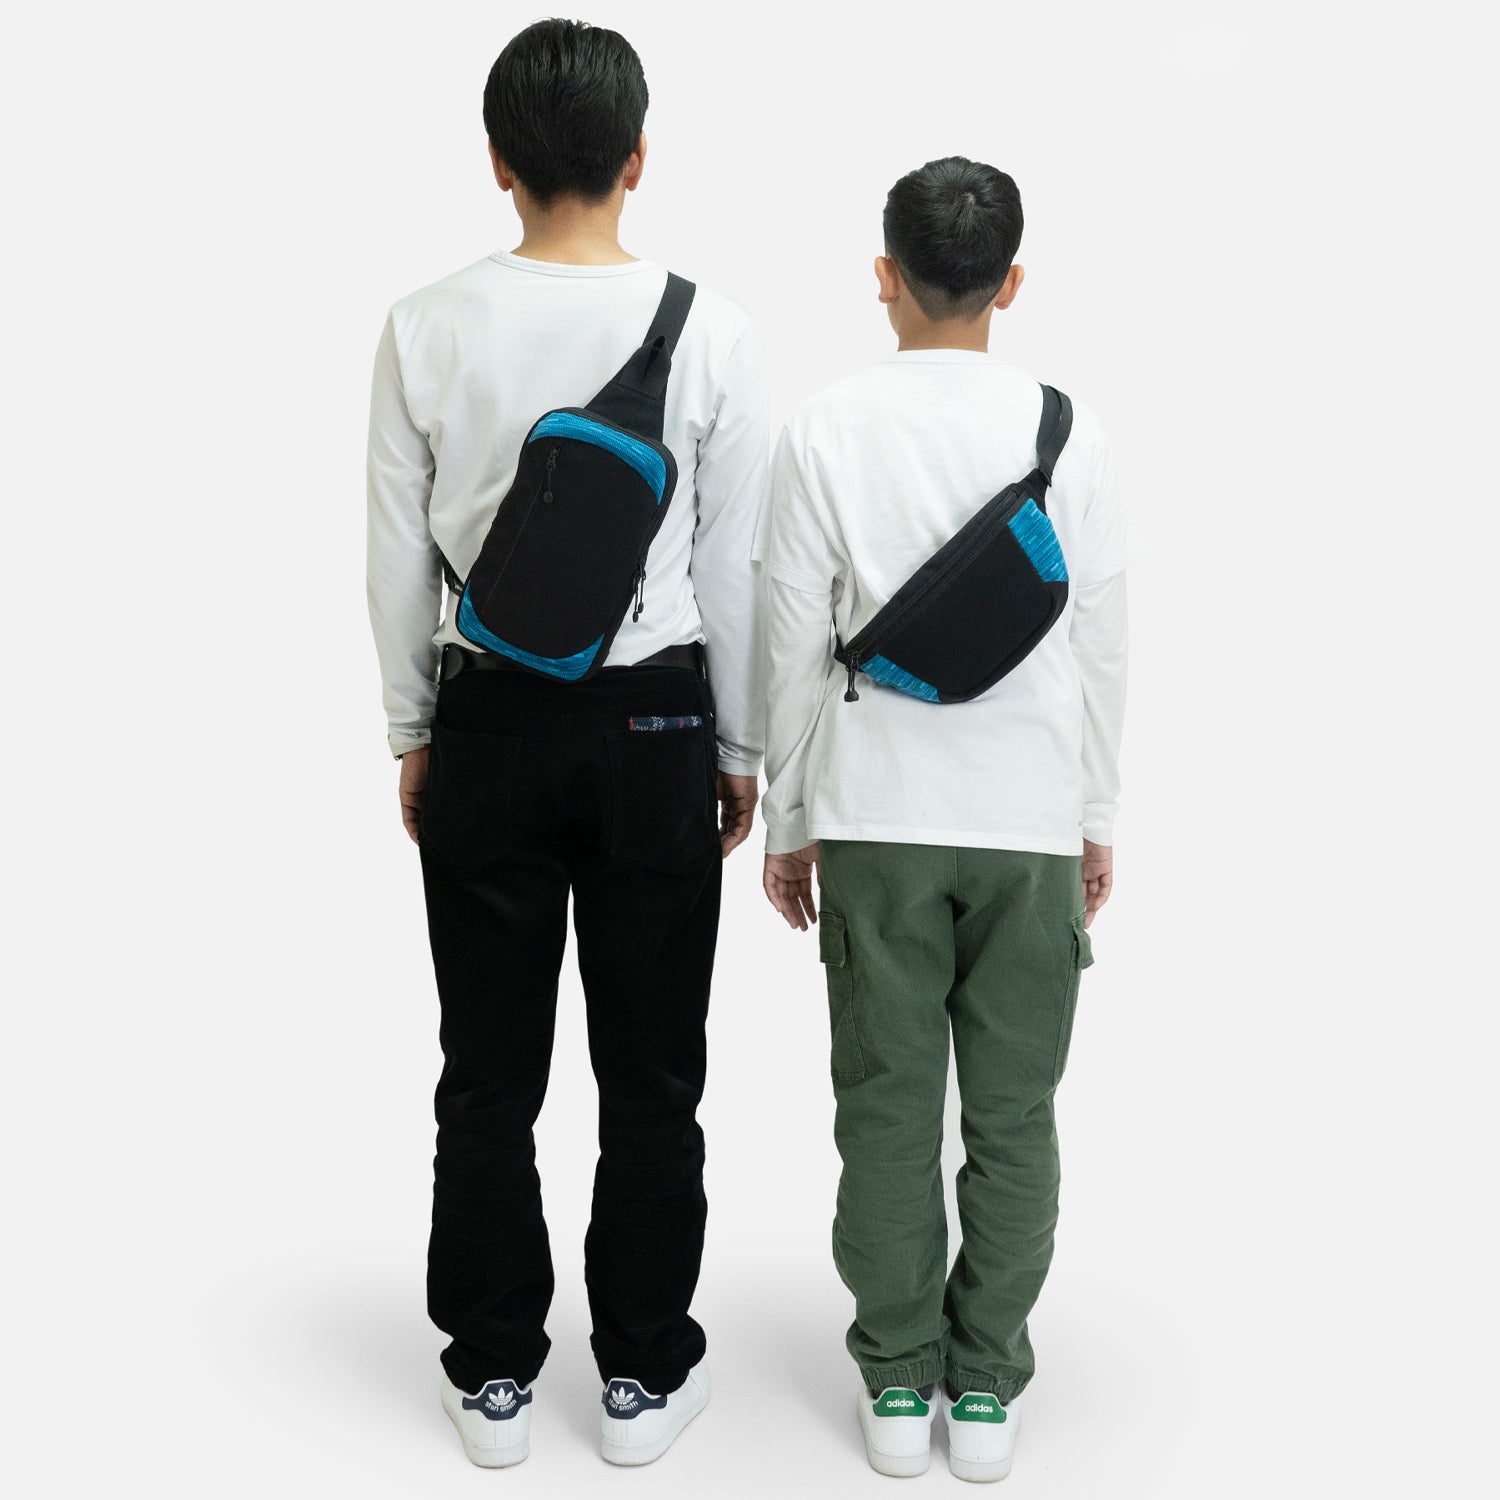 N700A東海道新幹線モケットウエストバッグは、大人はもちろん子供も使えるショルダーバッグです。身長に合わせてショルダーの長さを調整して、親子でシェアすることもできます。